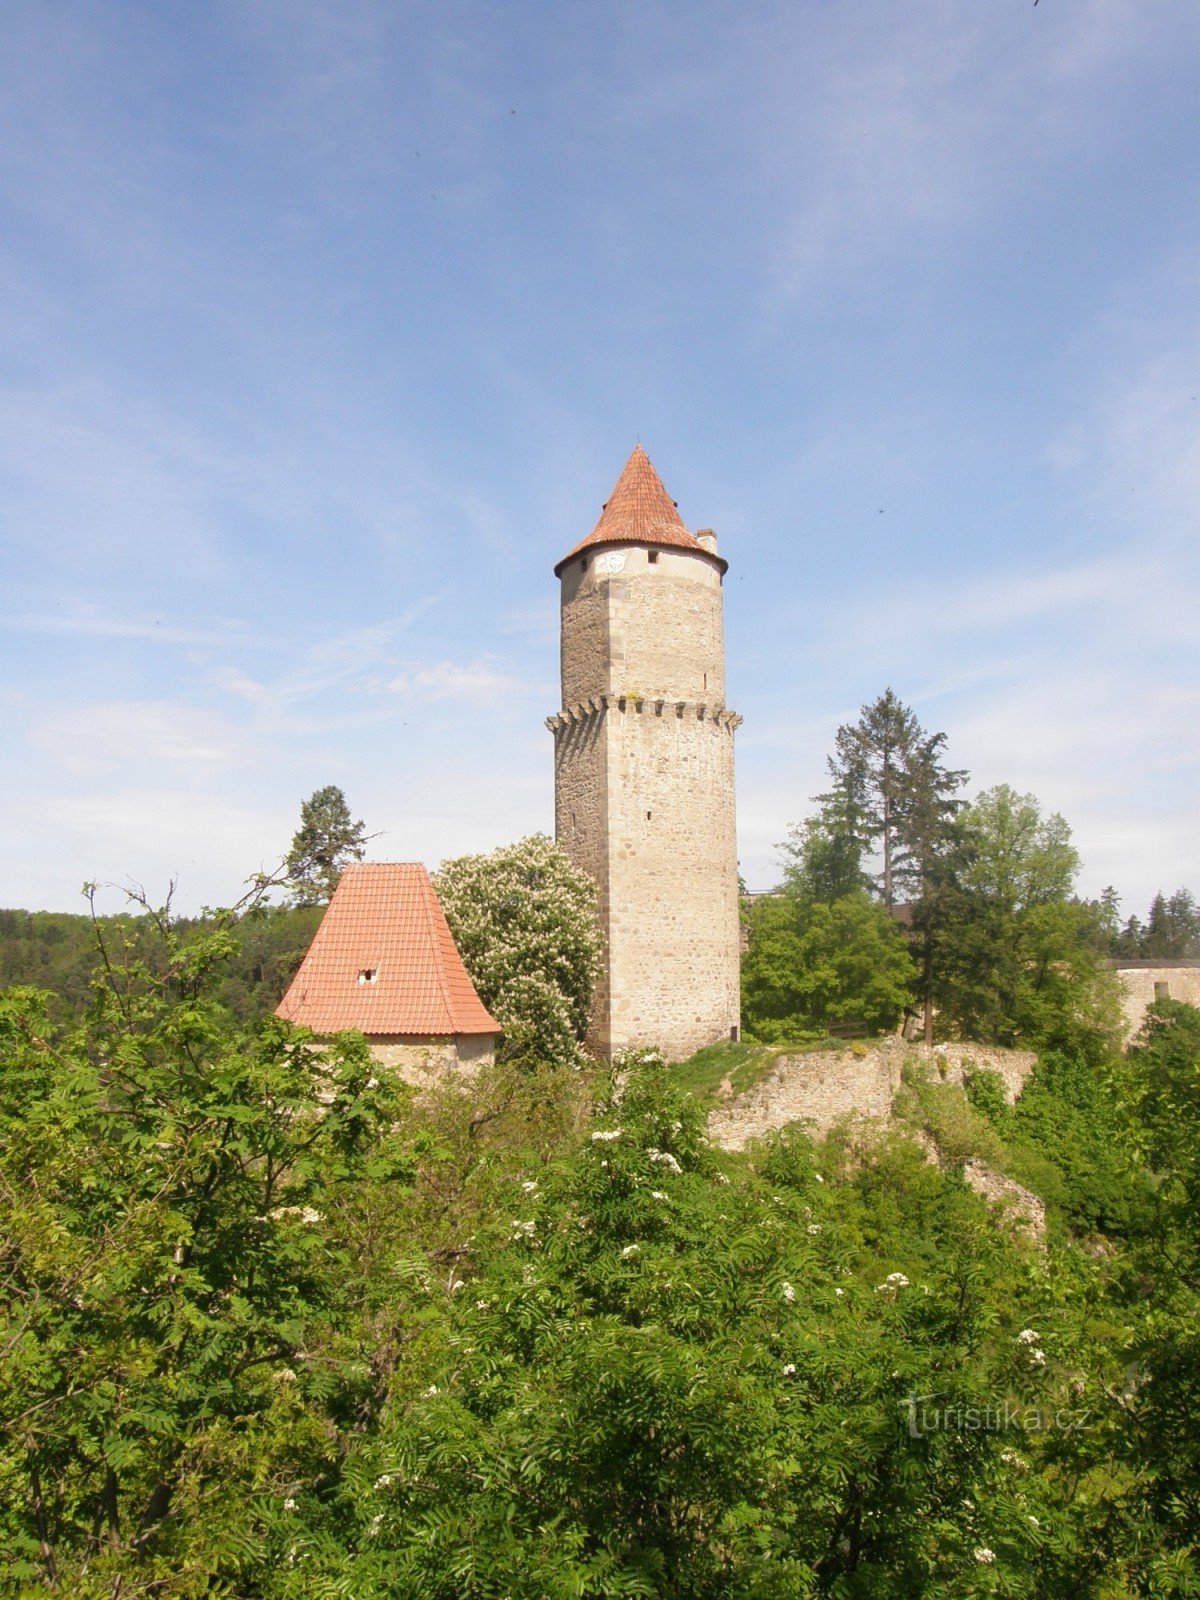 Písecká-porten och Hláska-tornet hör oskiljaktigt till varandra